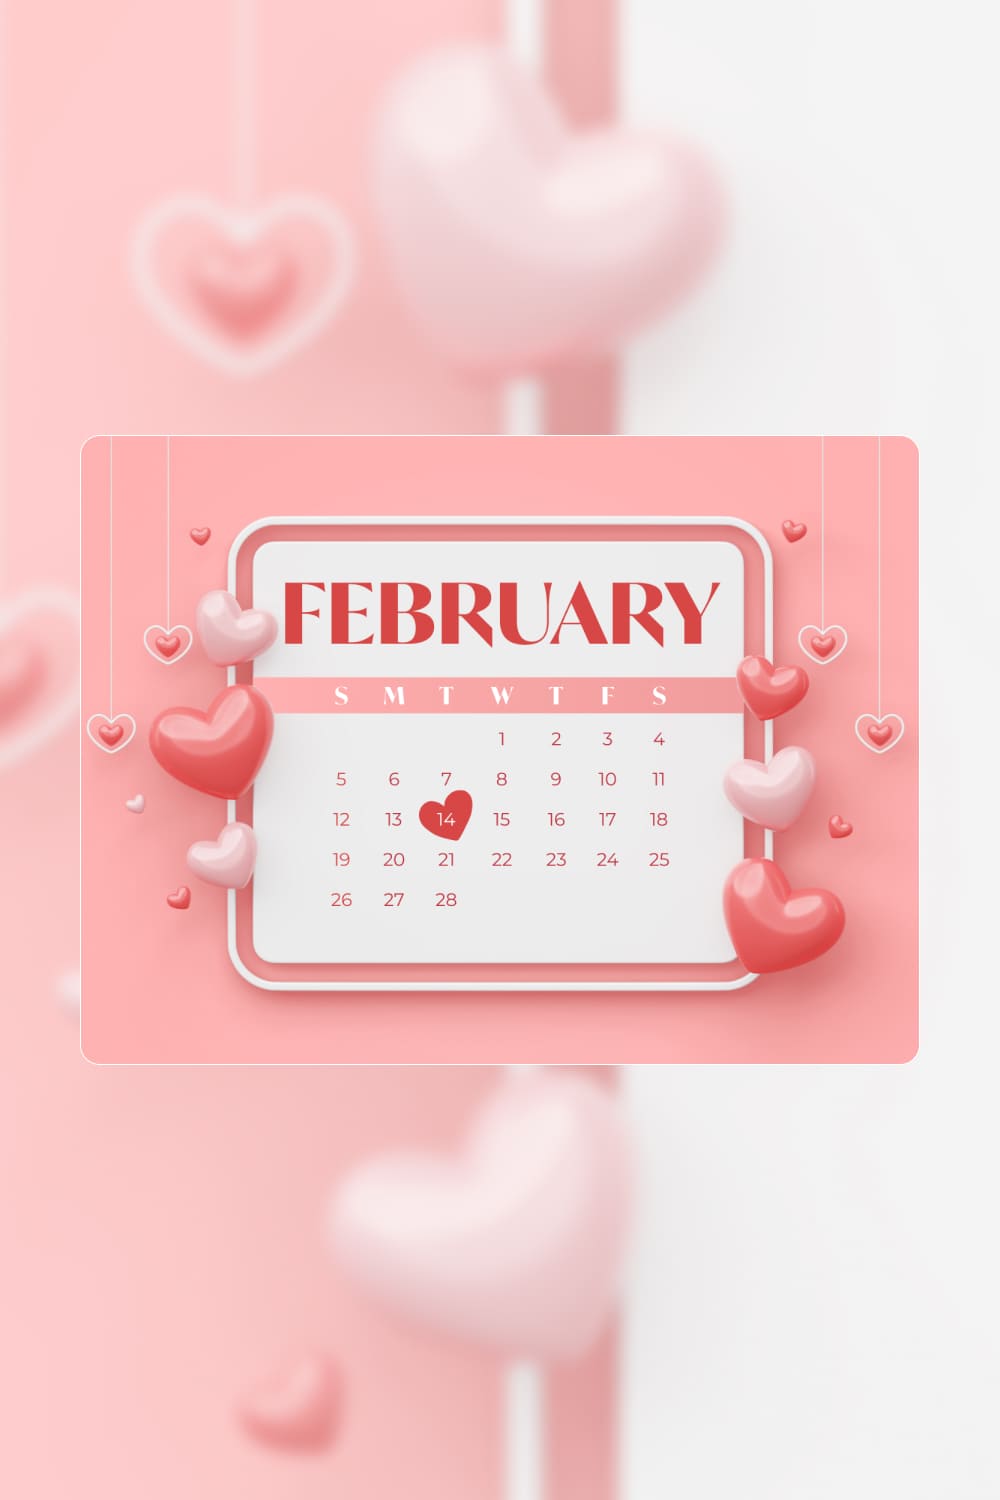 February Calendar Wallpaper, picture for pinterest.